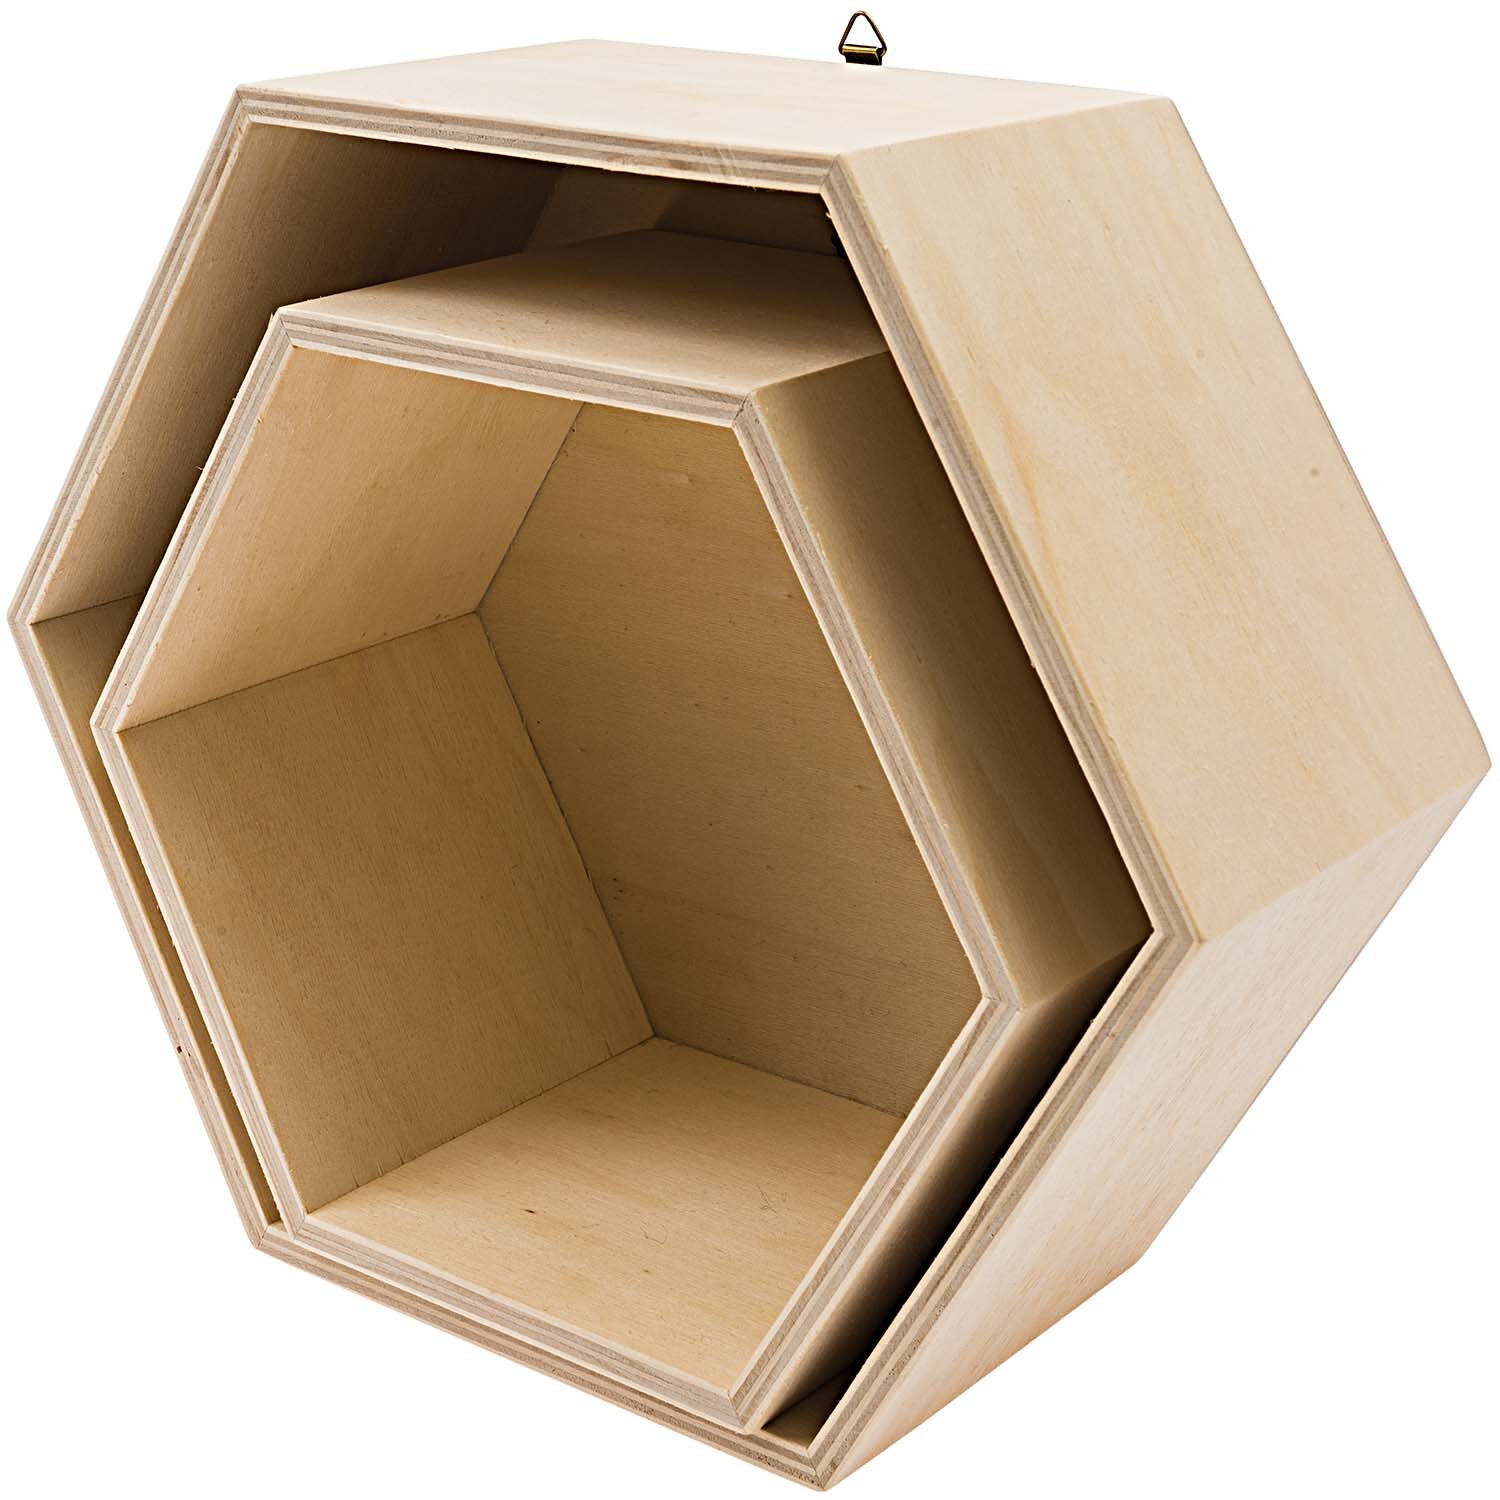 Holzbox Set sechseckig 2teilig